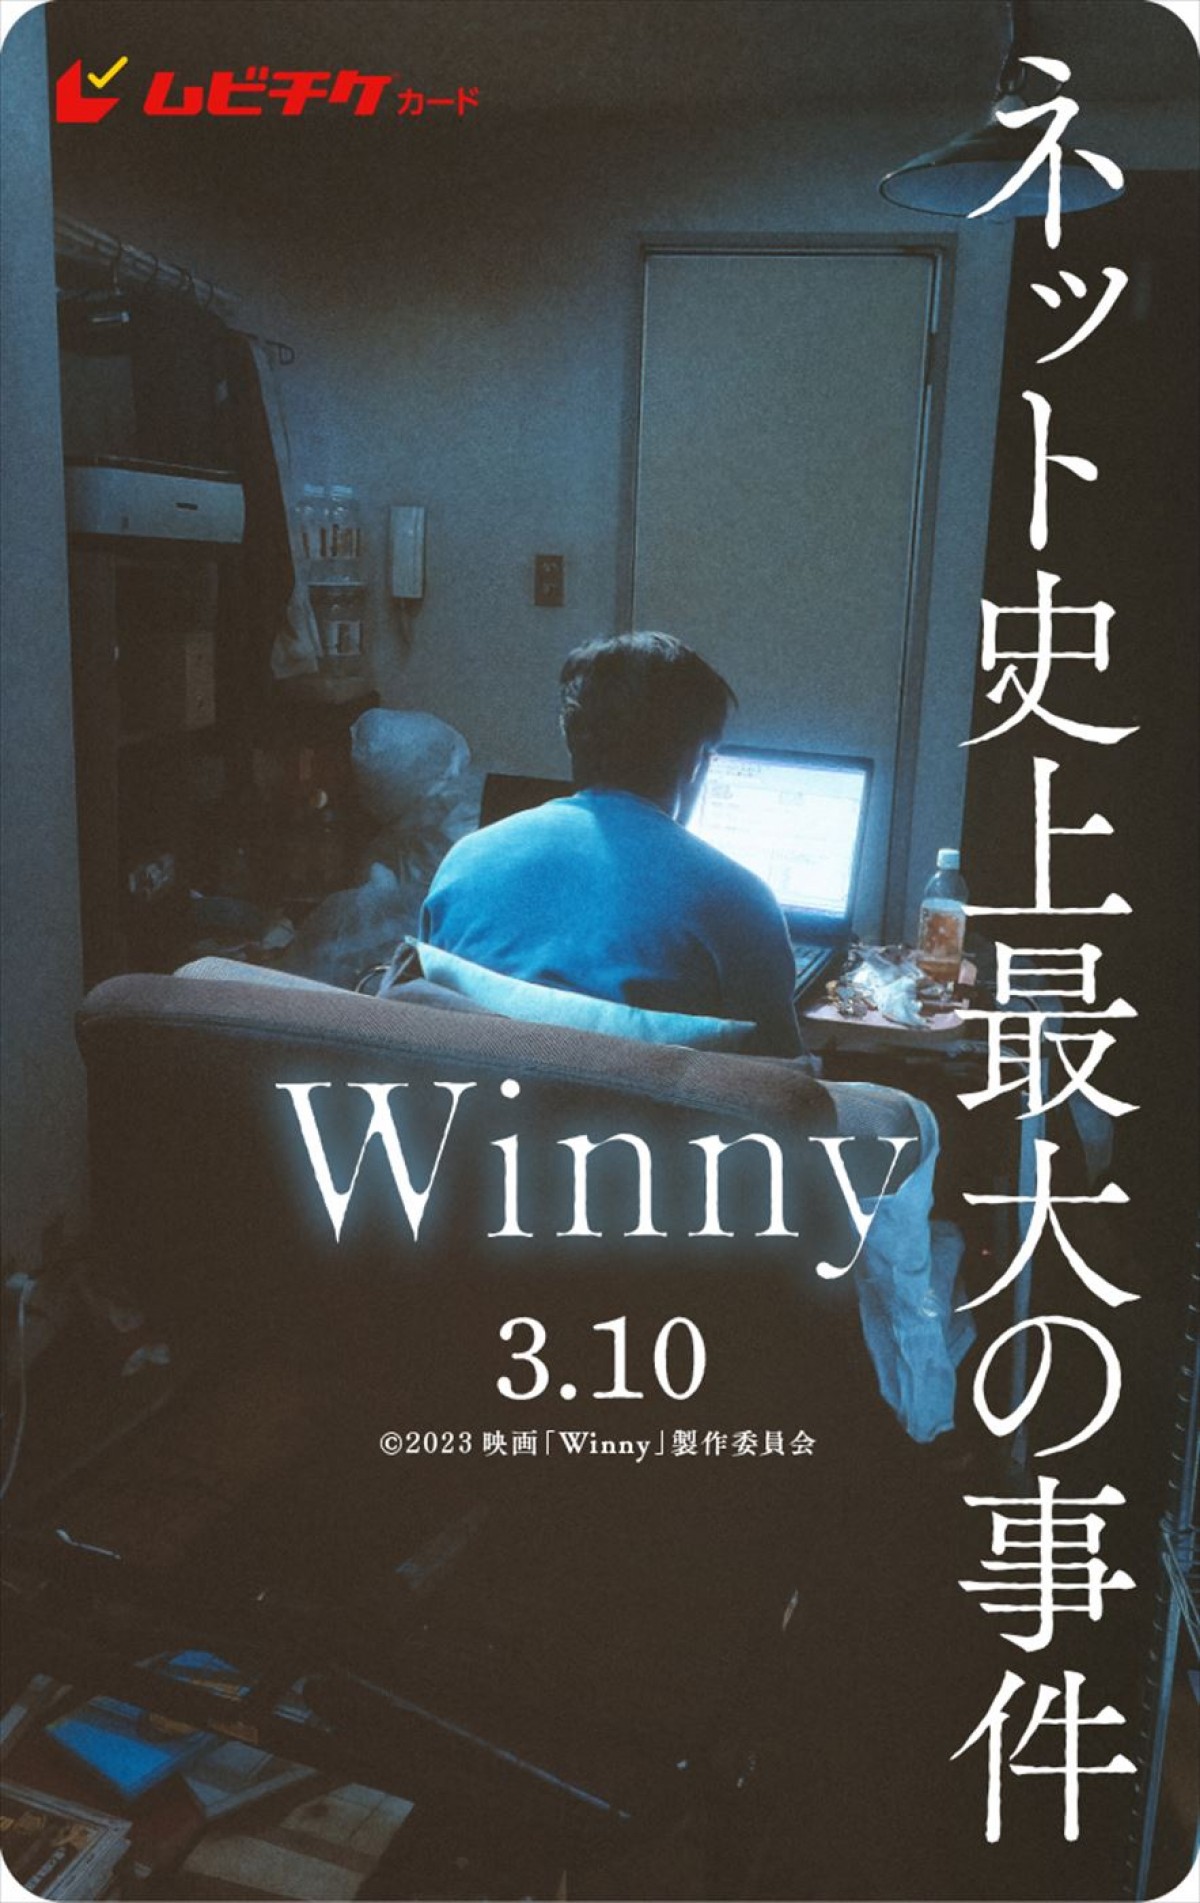 吉岡秀隆、吉田羊ら追加キャスト12名解禁！　映画『Winny』特報＆本ポスター到着　来年3.10公開へ